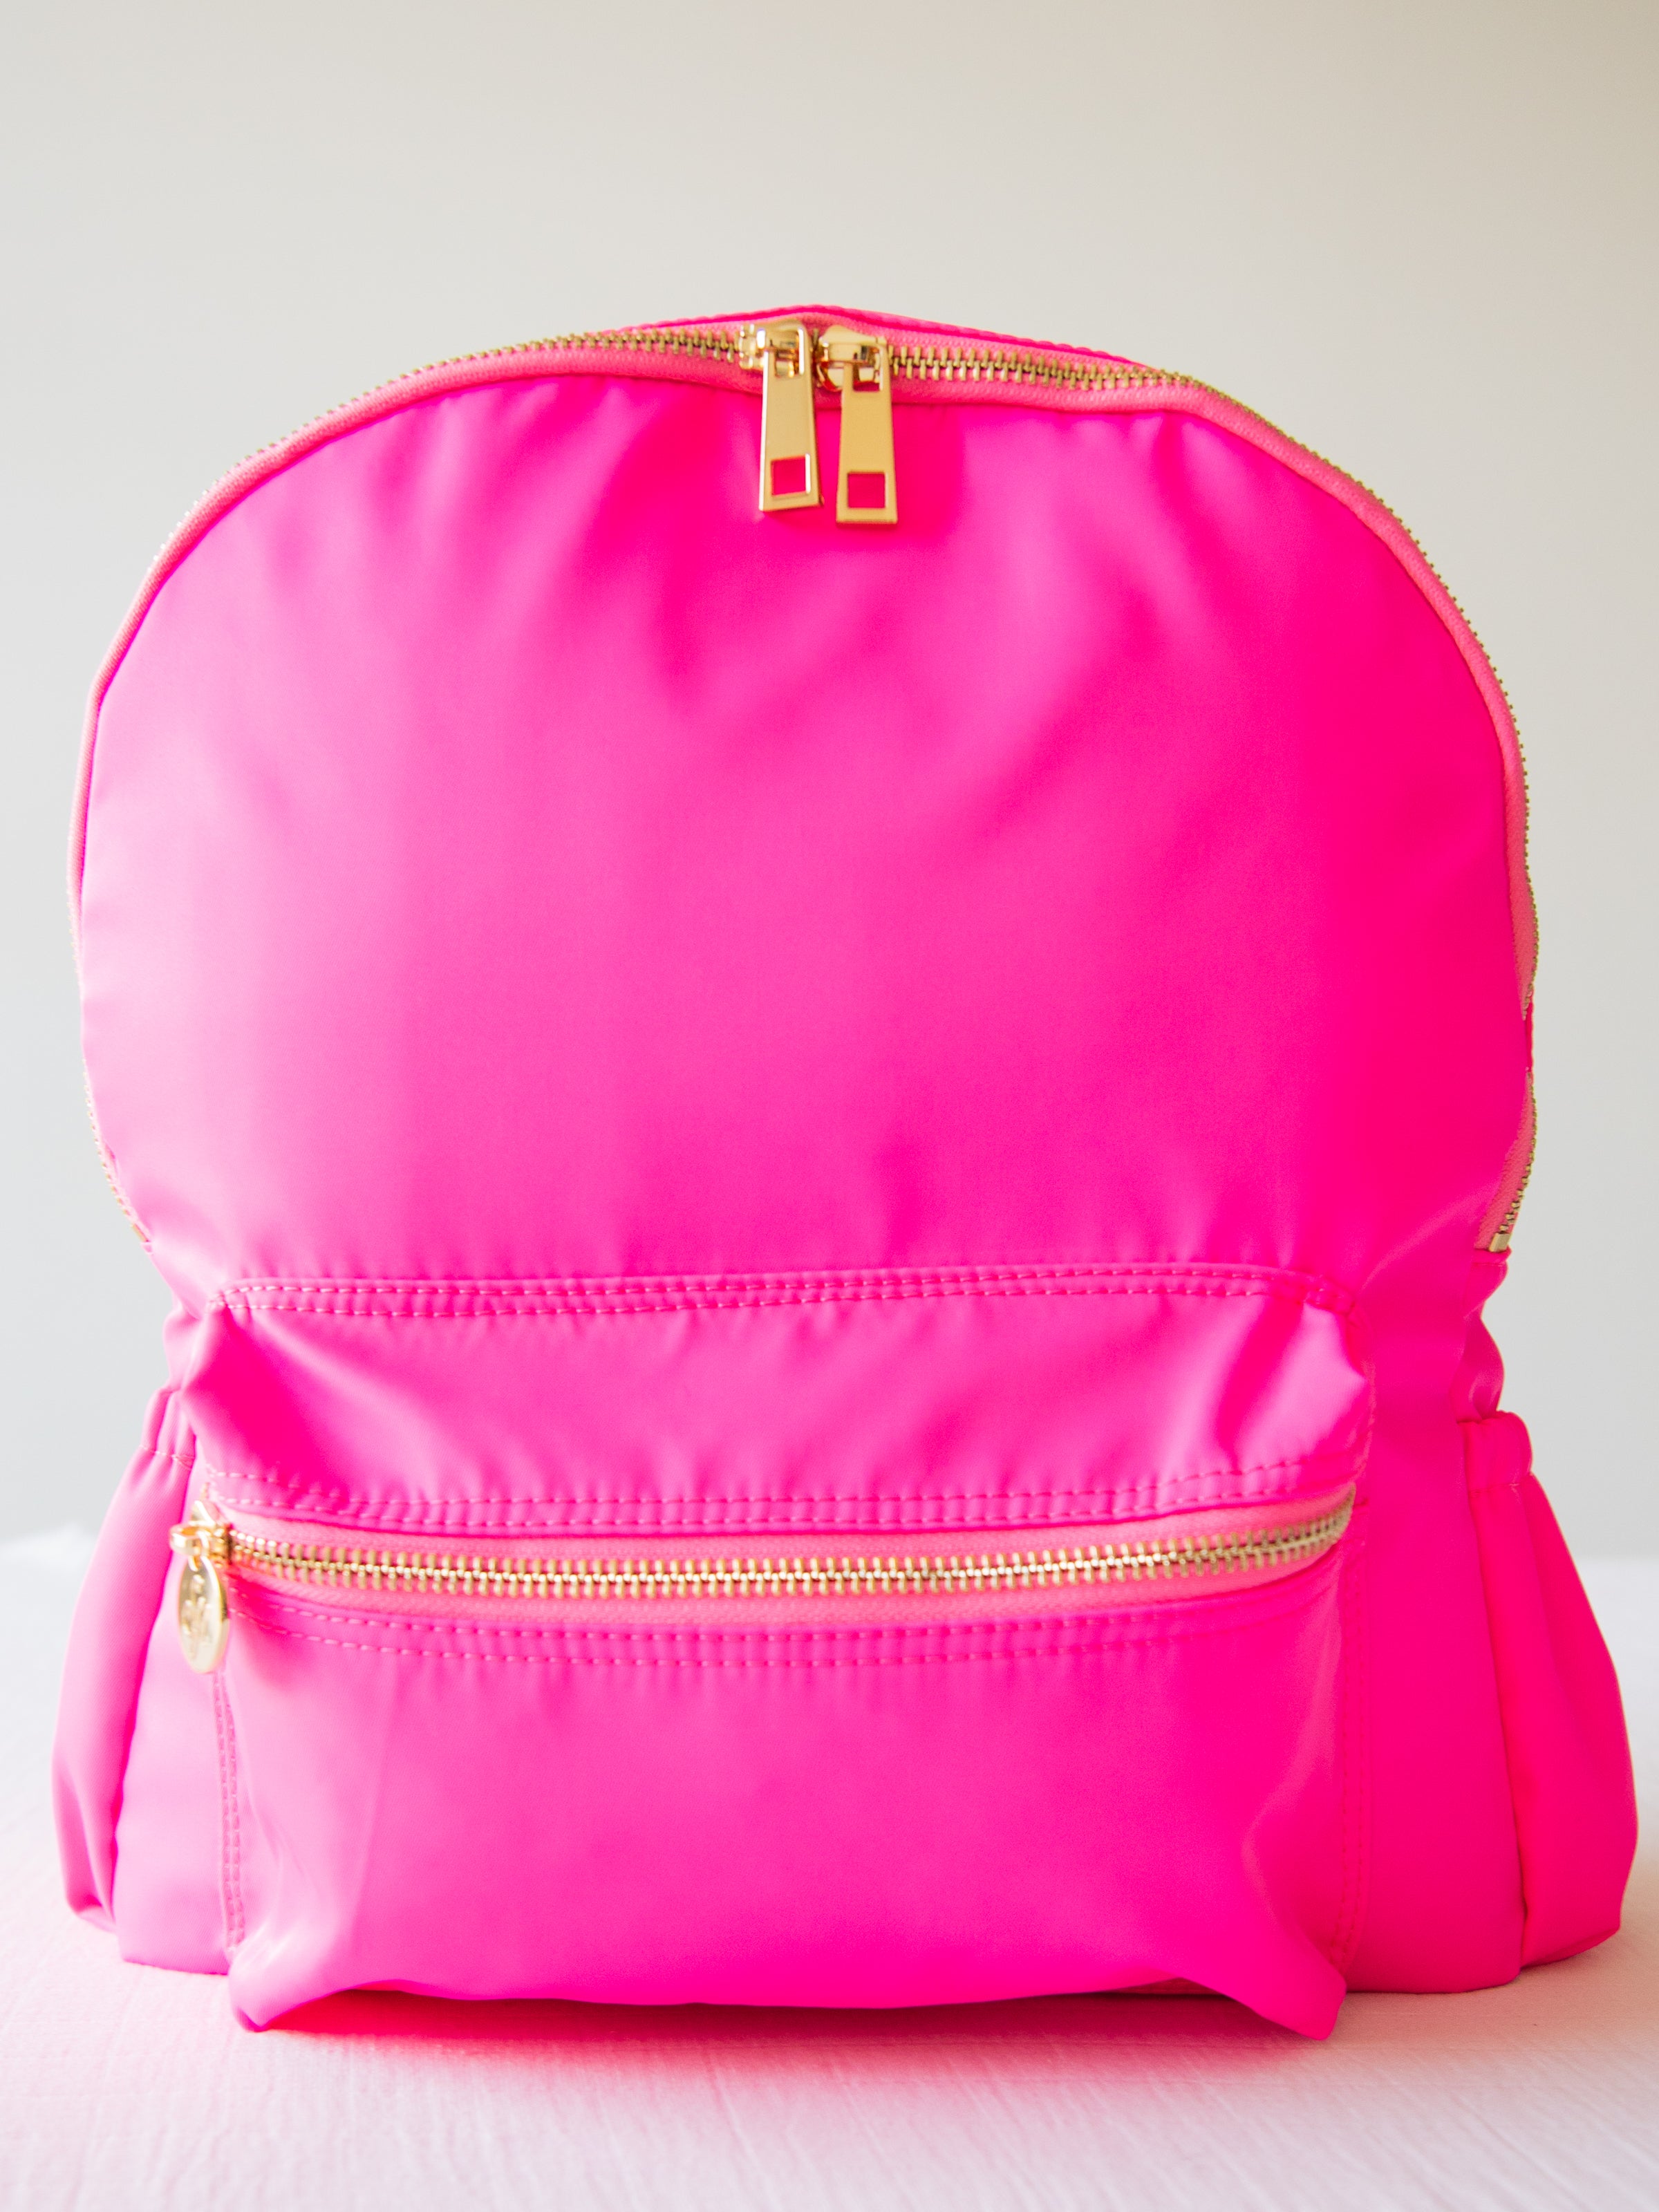 Retro Backpack - Vibrant Pink - SweetHoney Clothing